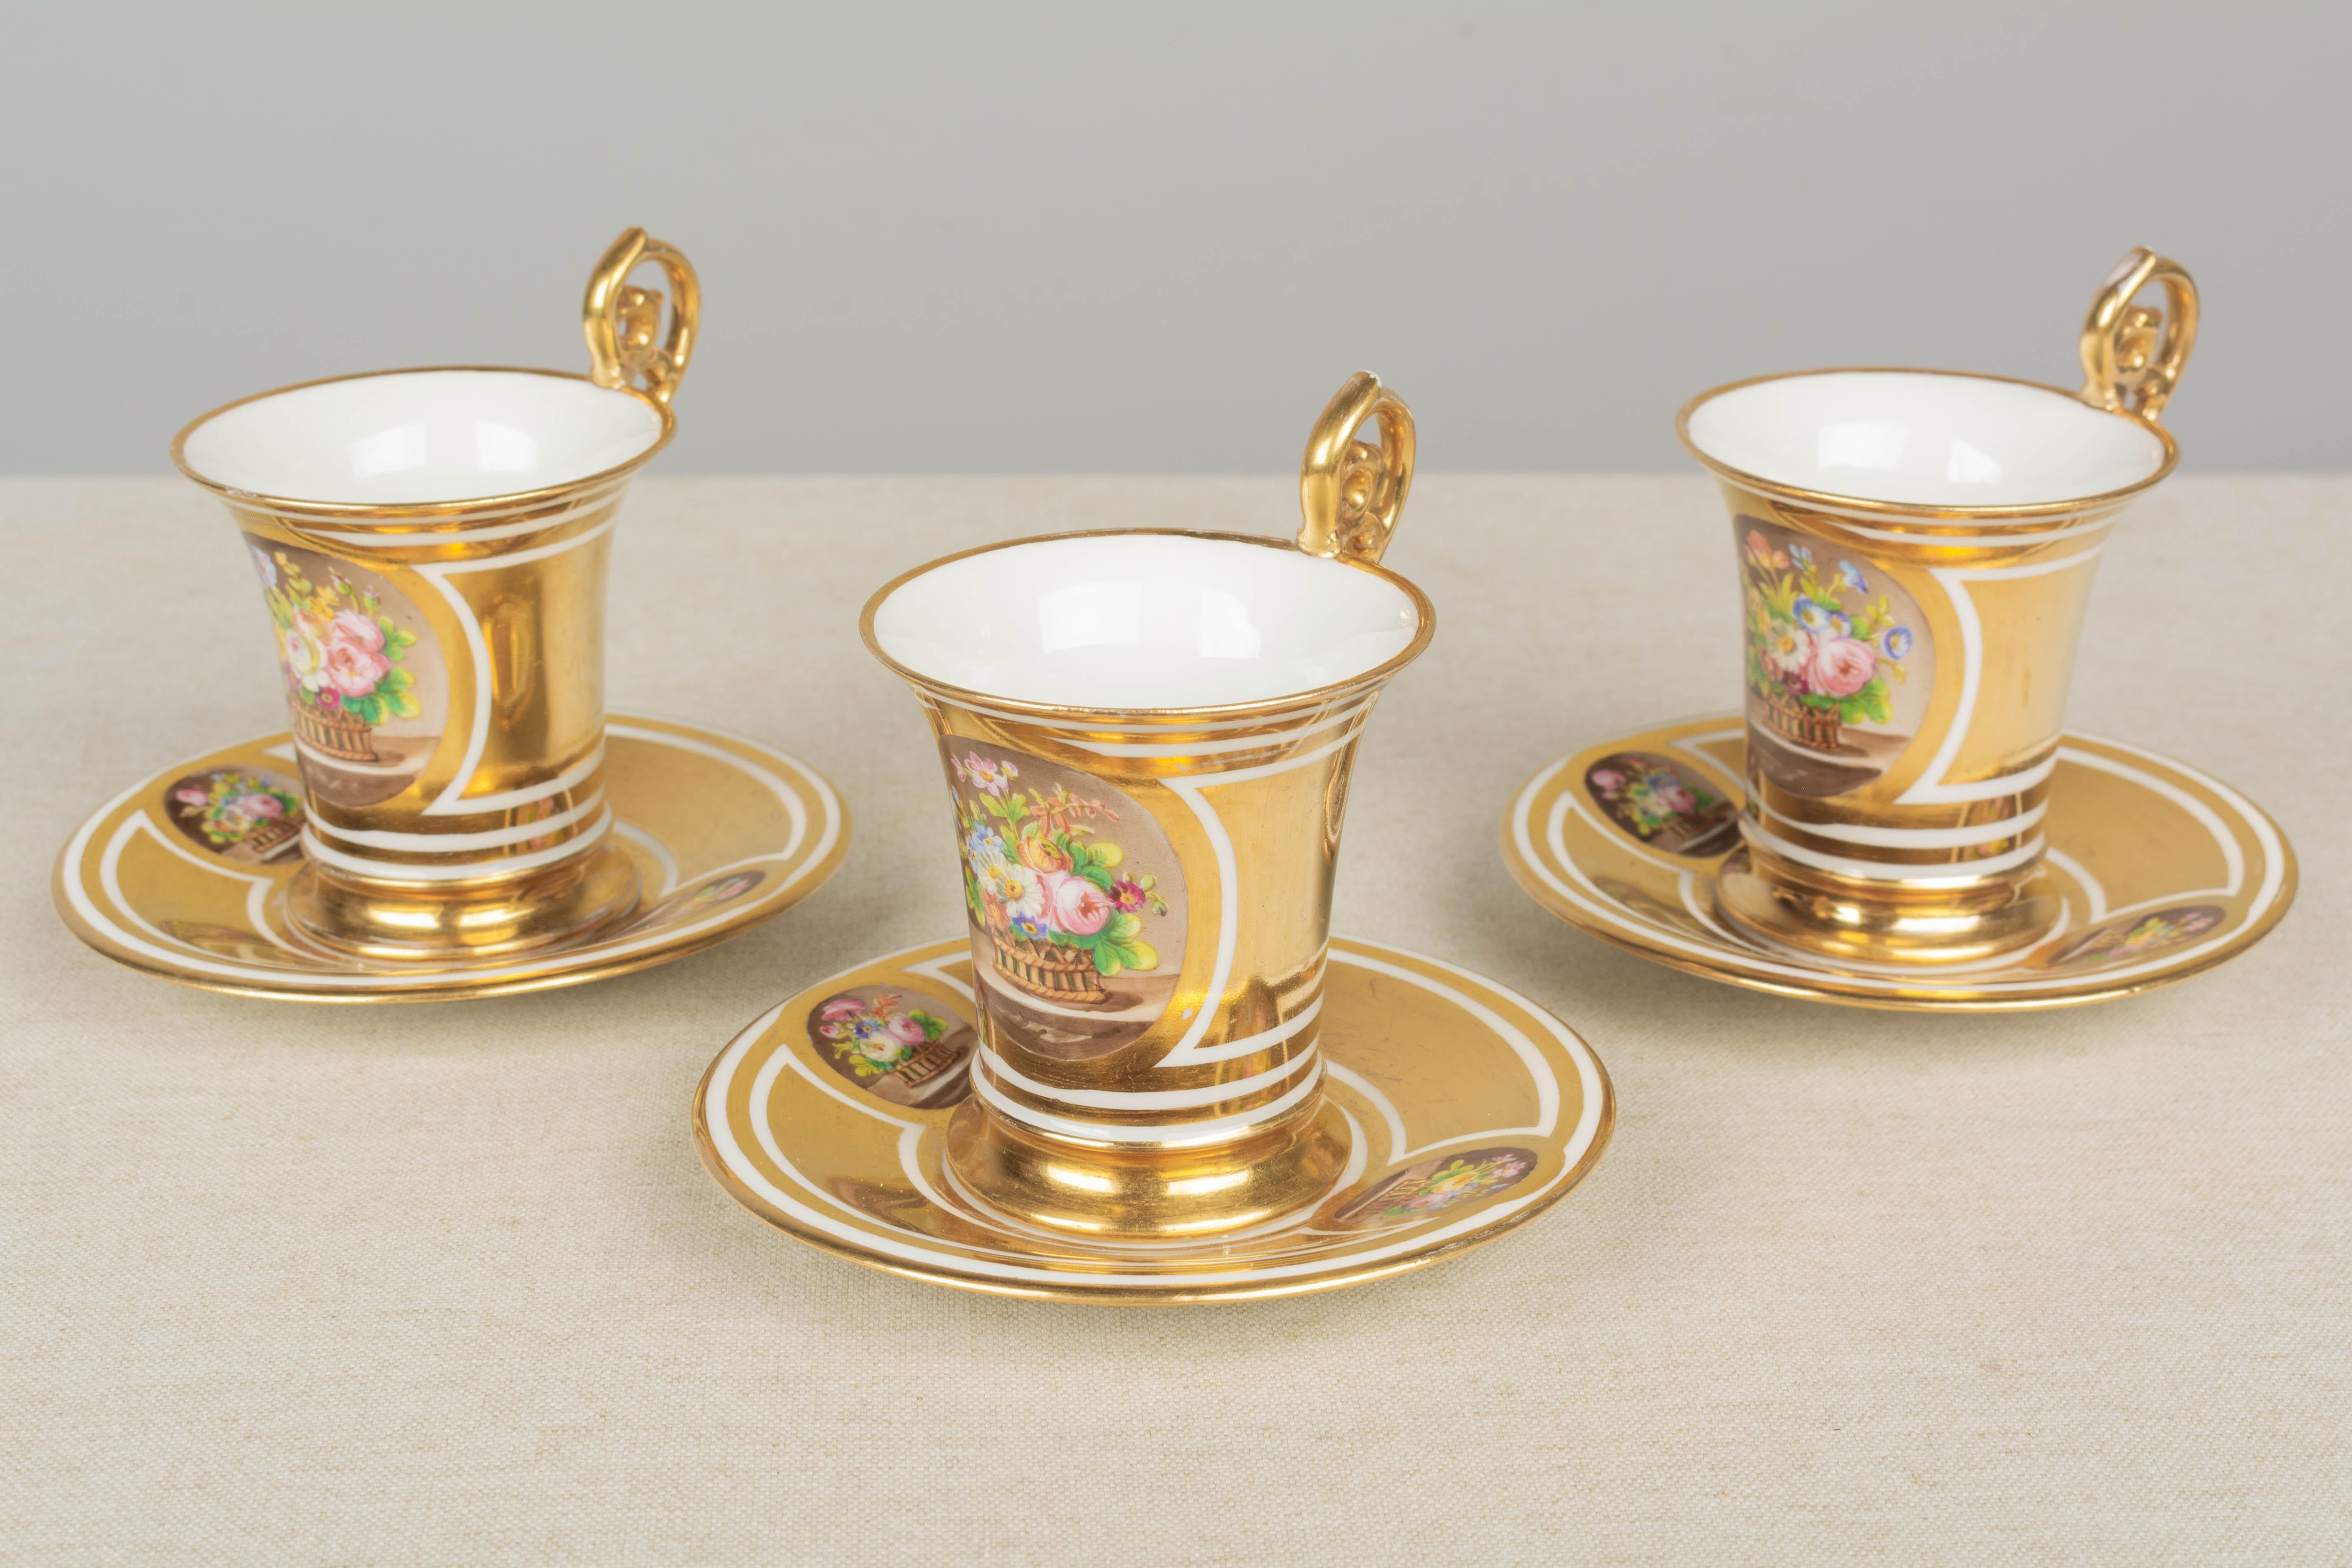 Un ensemble de trois tasses et soucoupes en porcelaine fine dorée de Sèvres du 19e siècle, avec de grandes poignées à volutes. Décoration florale peinte à la main. Marque de Sèvres sur la face inférieure avec le cachet rouge du Château des